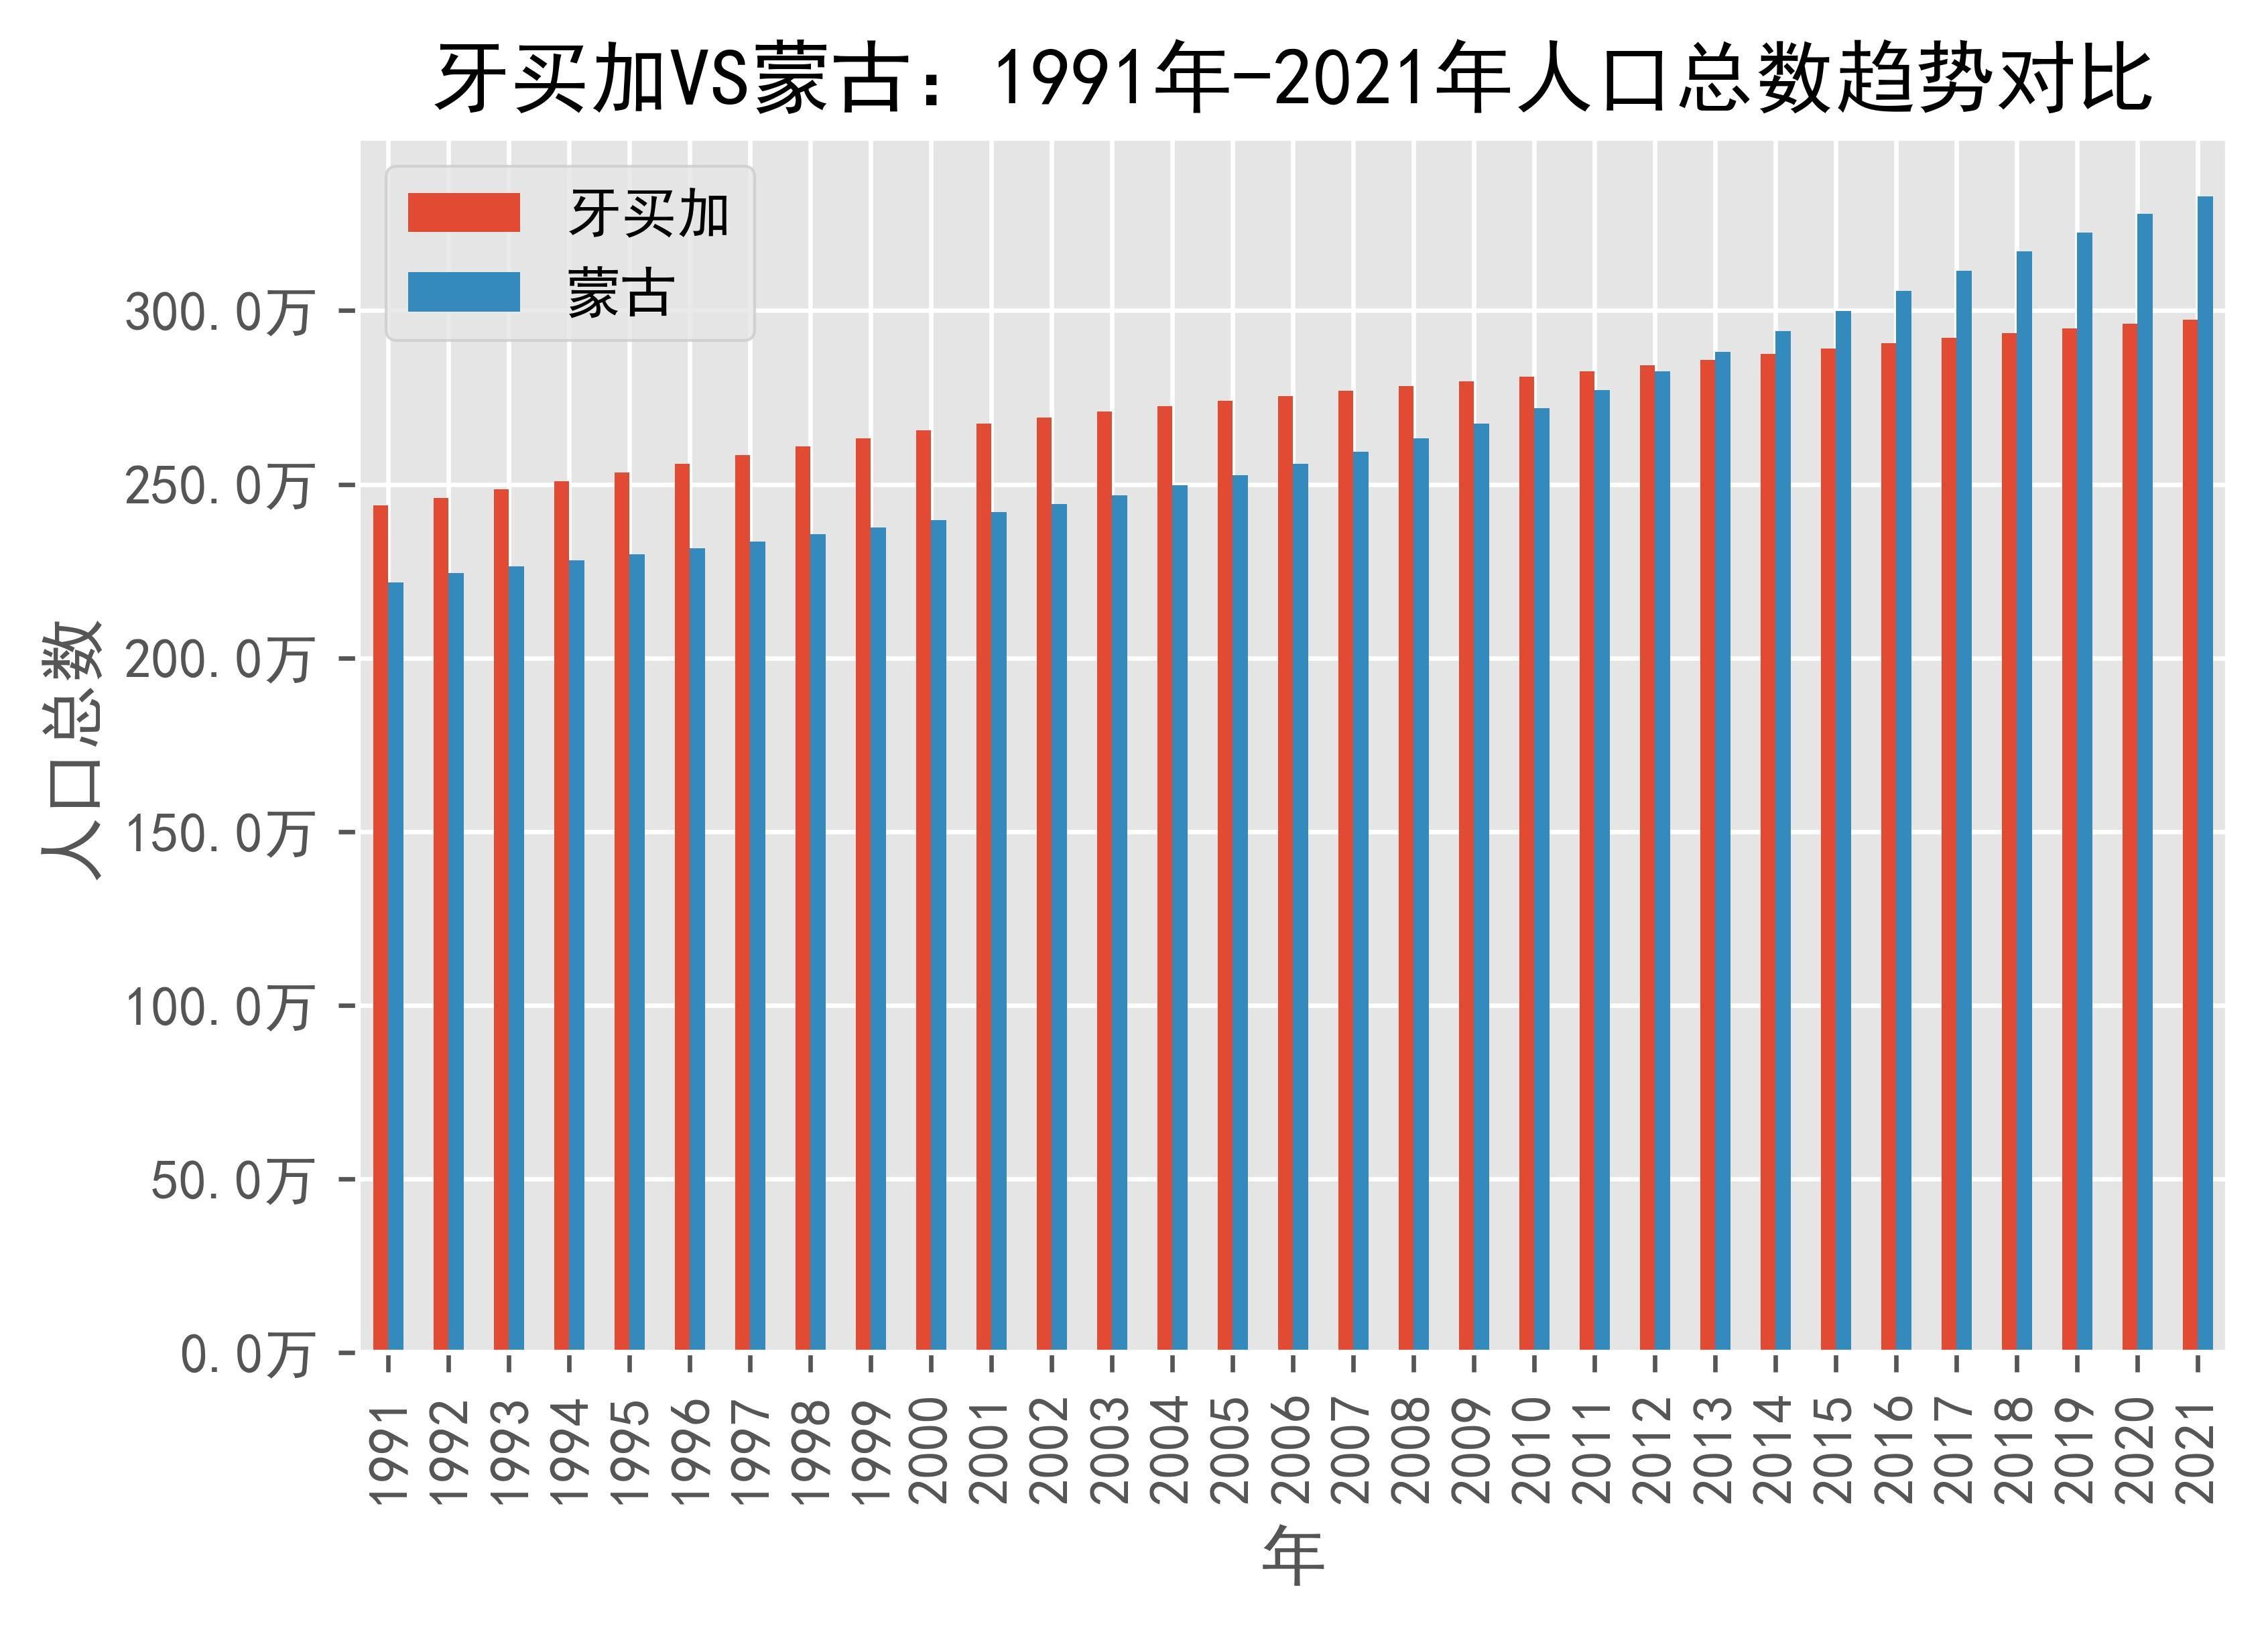 牙买加vs蒙古人口总数趋势对比(1991年